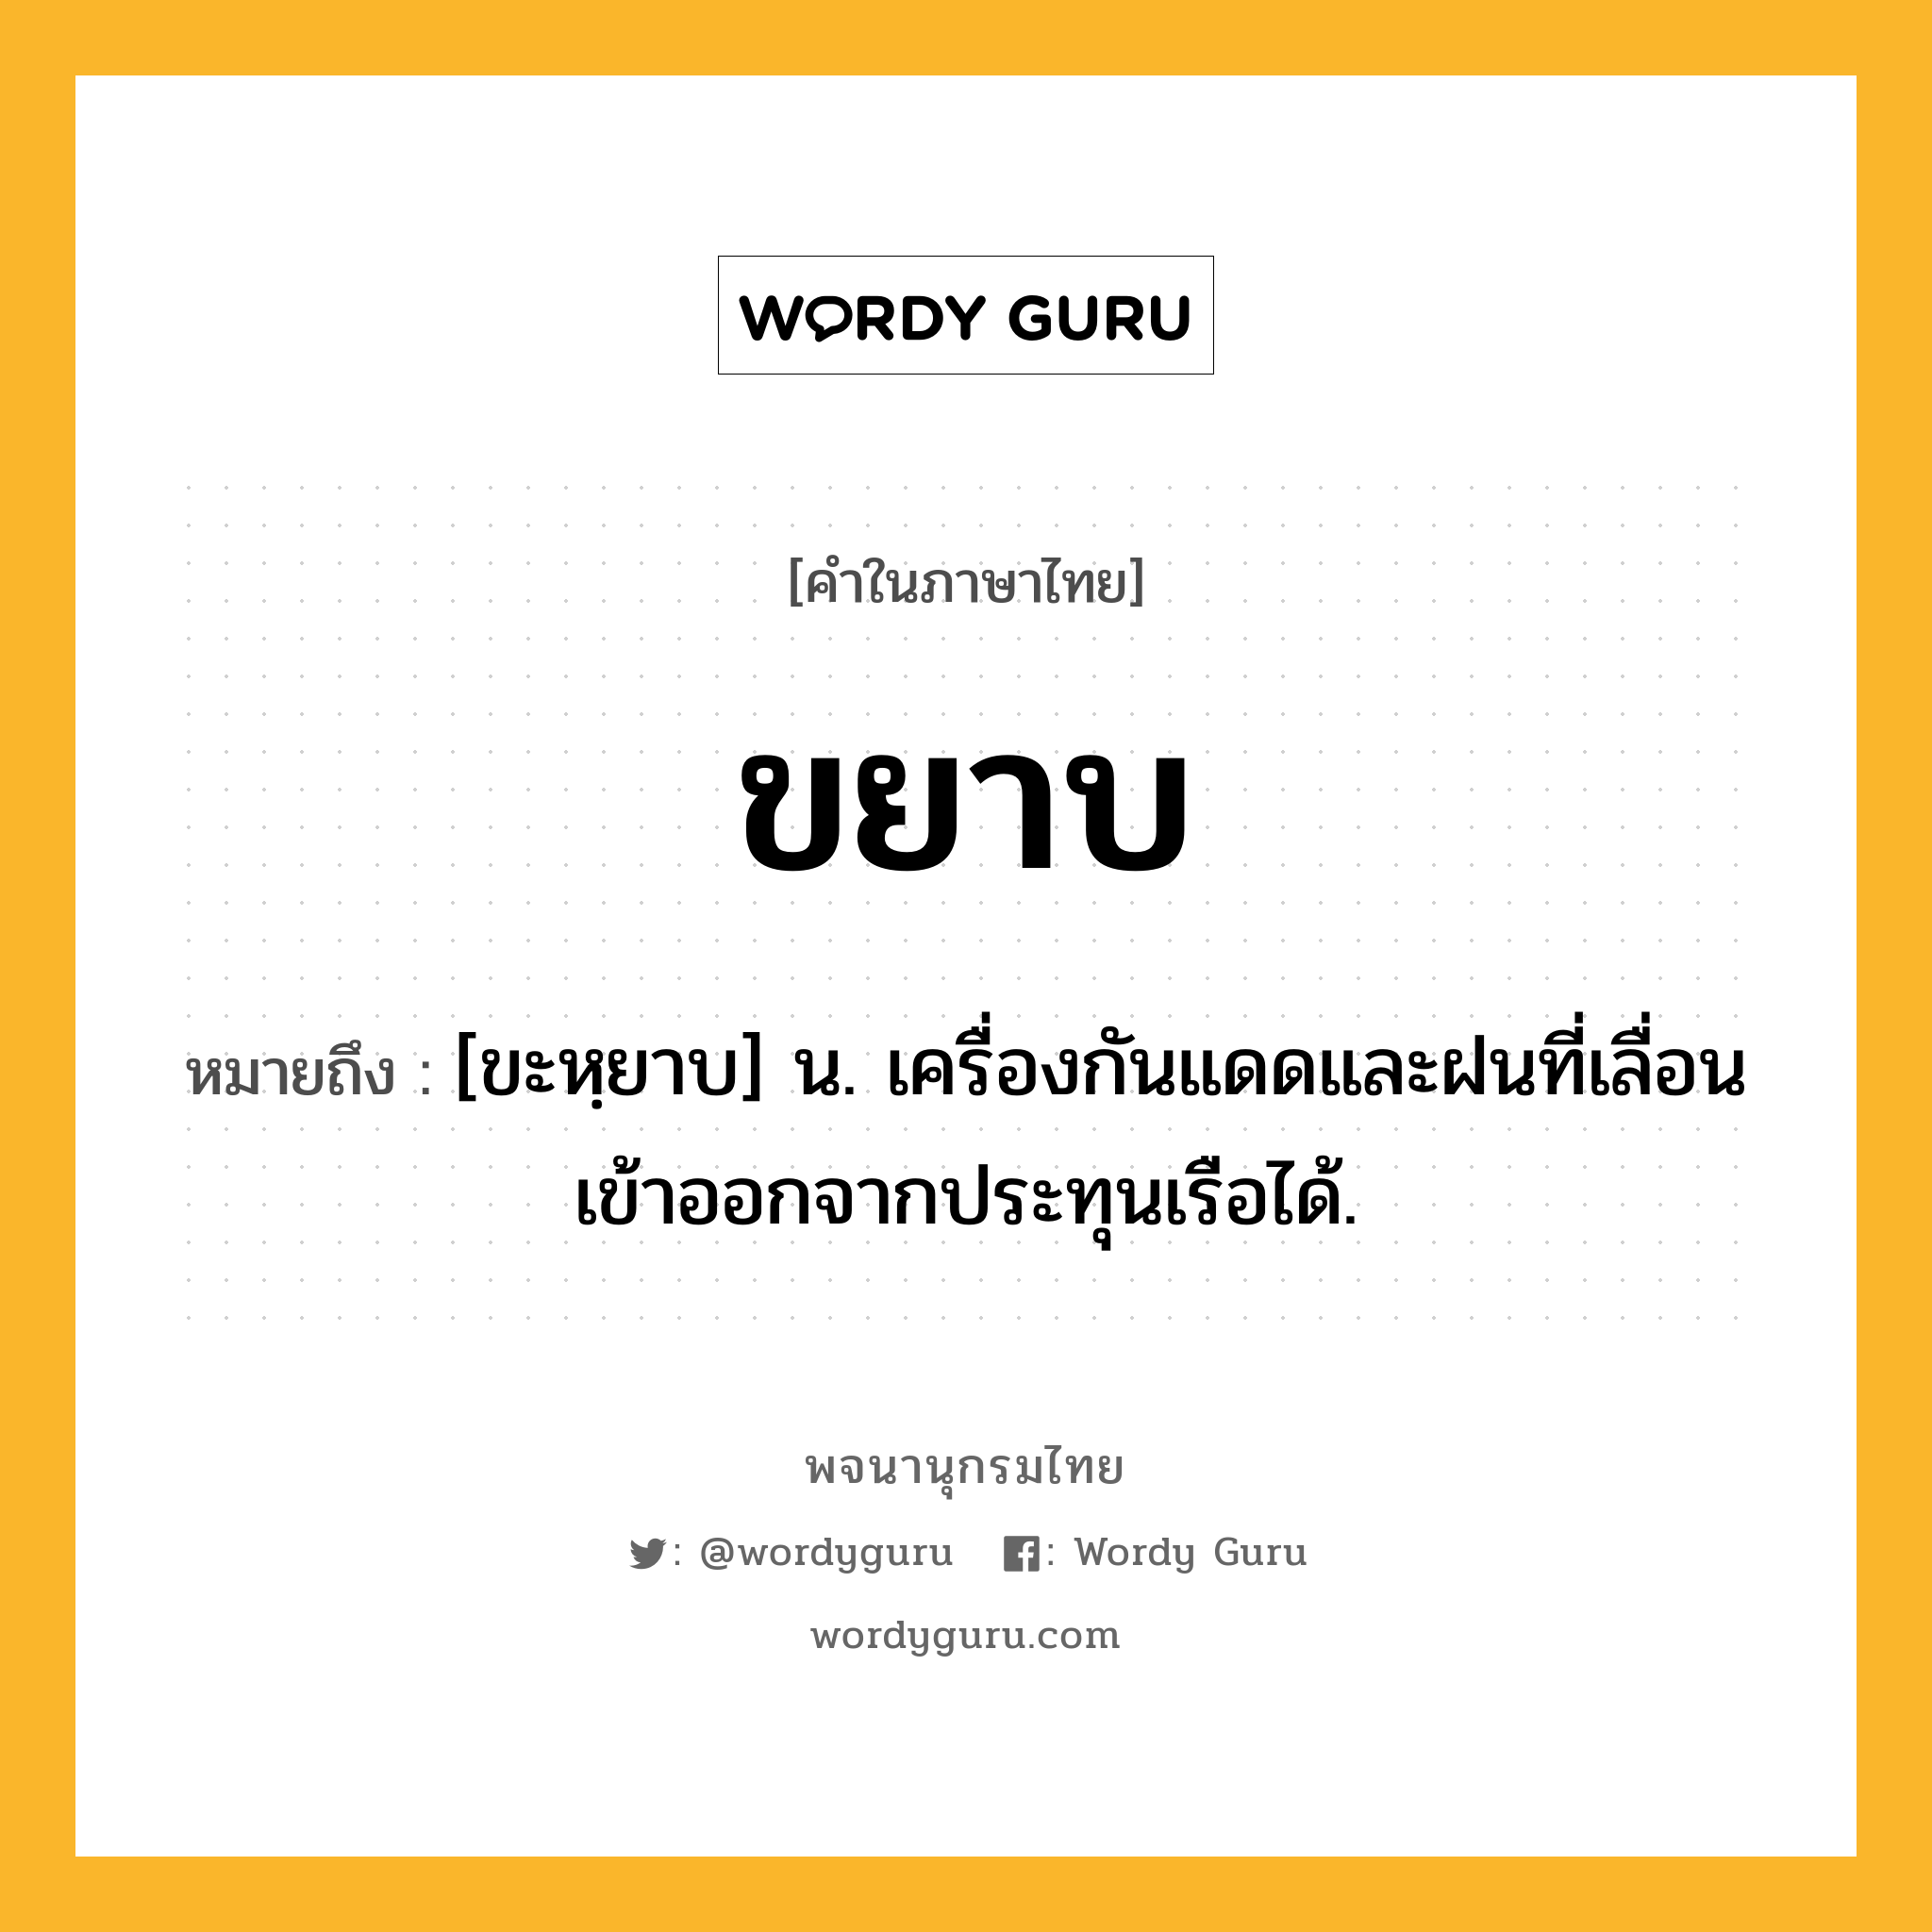 ขยาบ ความหมาย หมายถึงอะไร?, คำในภาษาไทย ขยาบ หมายถึง [ขะหฺยาบ] น. เครื่องกันแดดและฝนที่เลื่อนเข้าออกจากประทุนเรือได้.